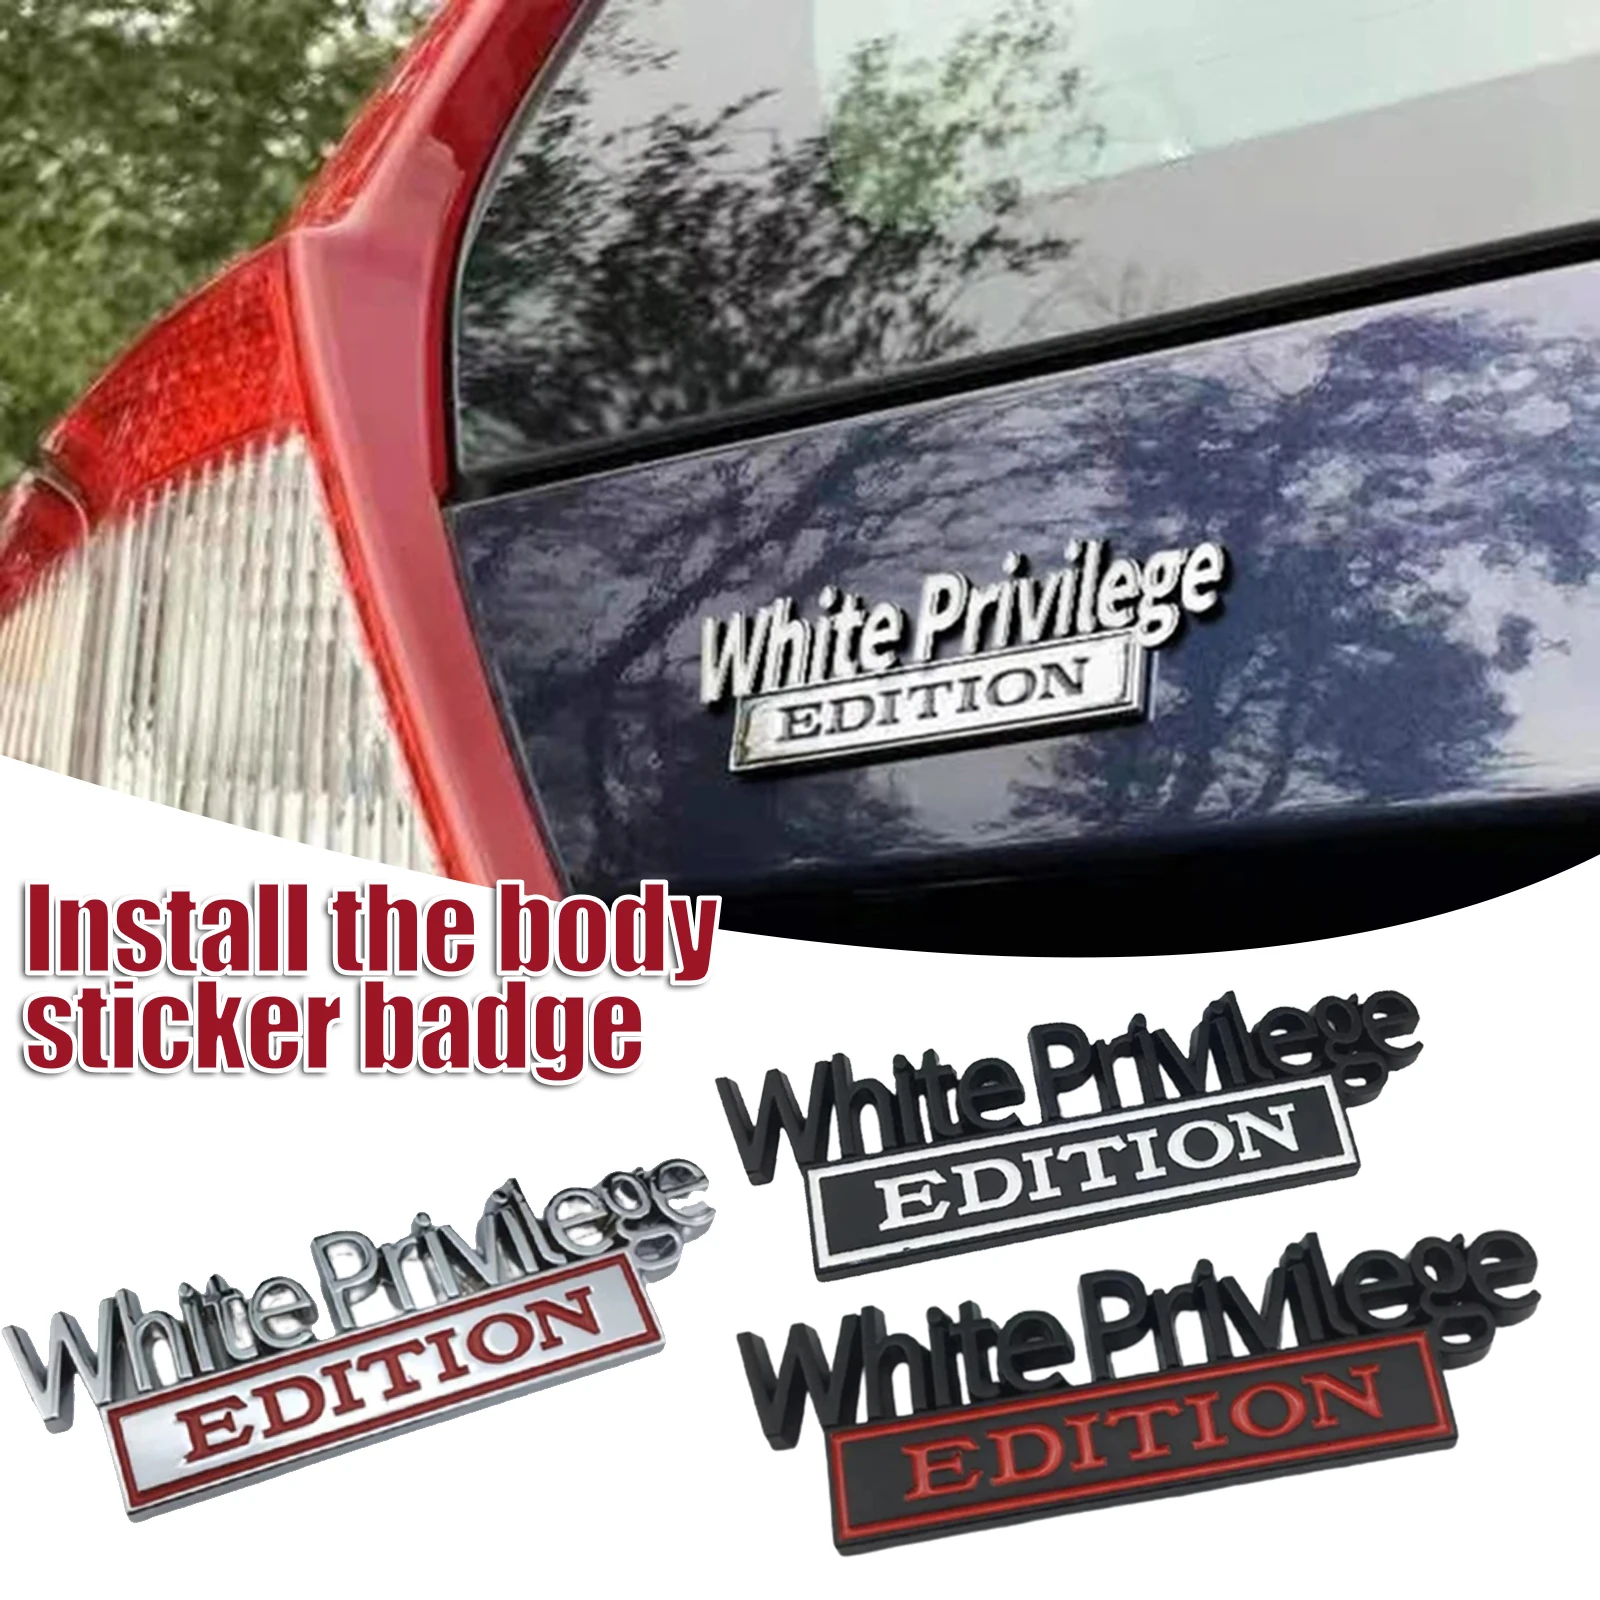 

Новый оригинальный белый привилегии эмблема «Edition» значок на крыло автомобиля грузовика 3D письмо эмблемы Стикеры наклейка